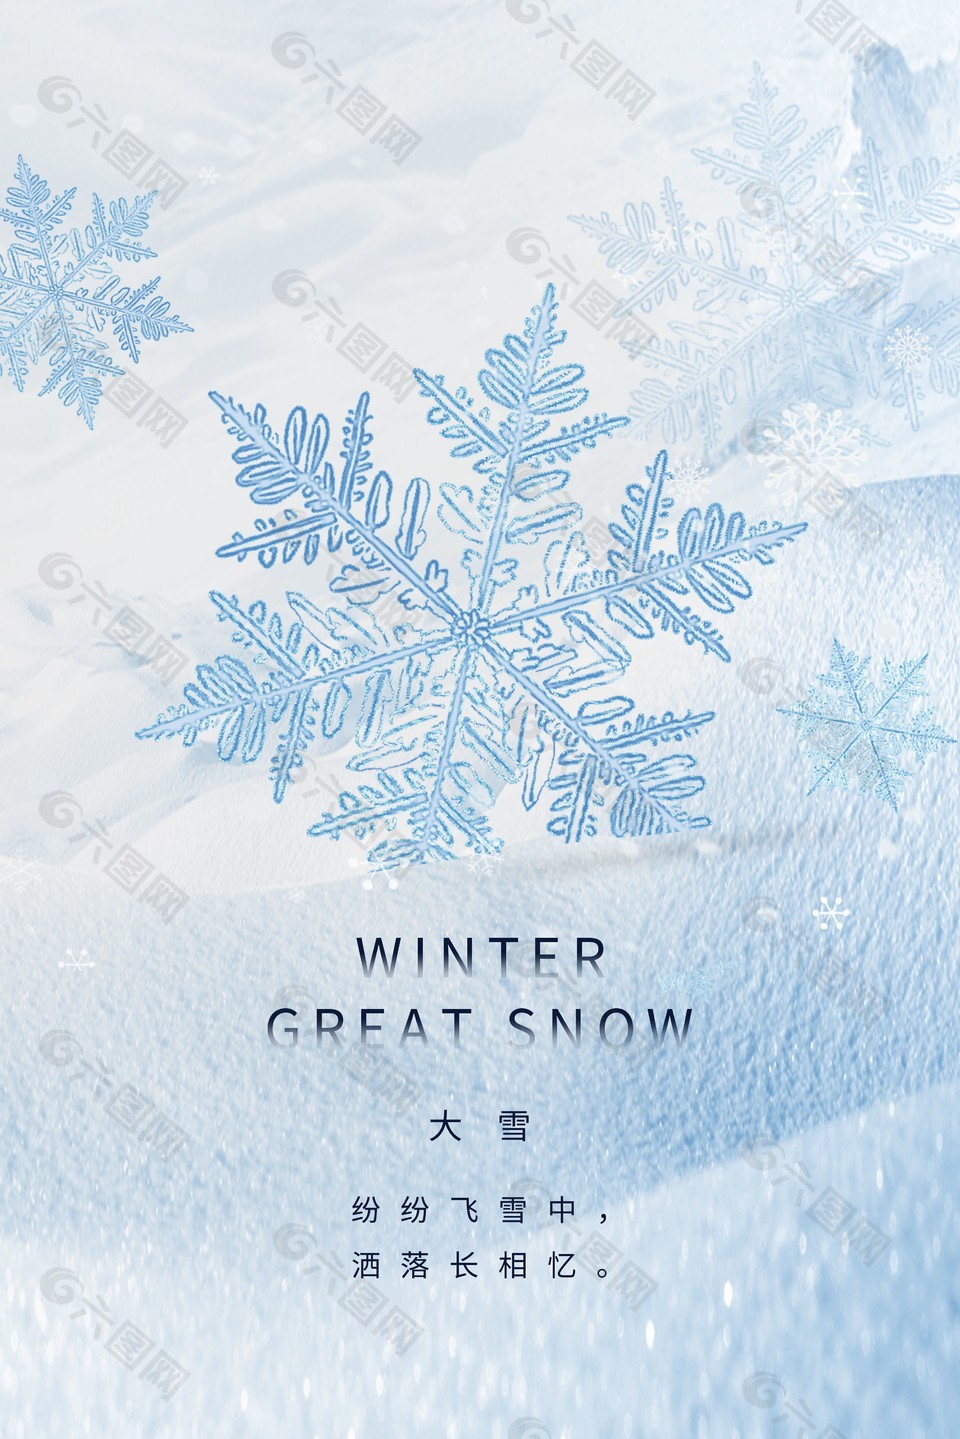 大雪时节清冷意境海报